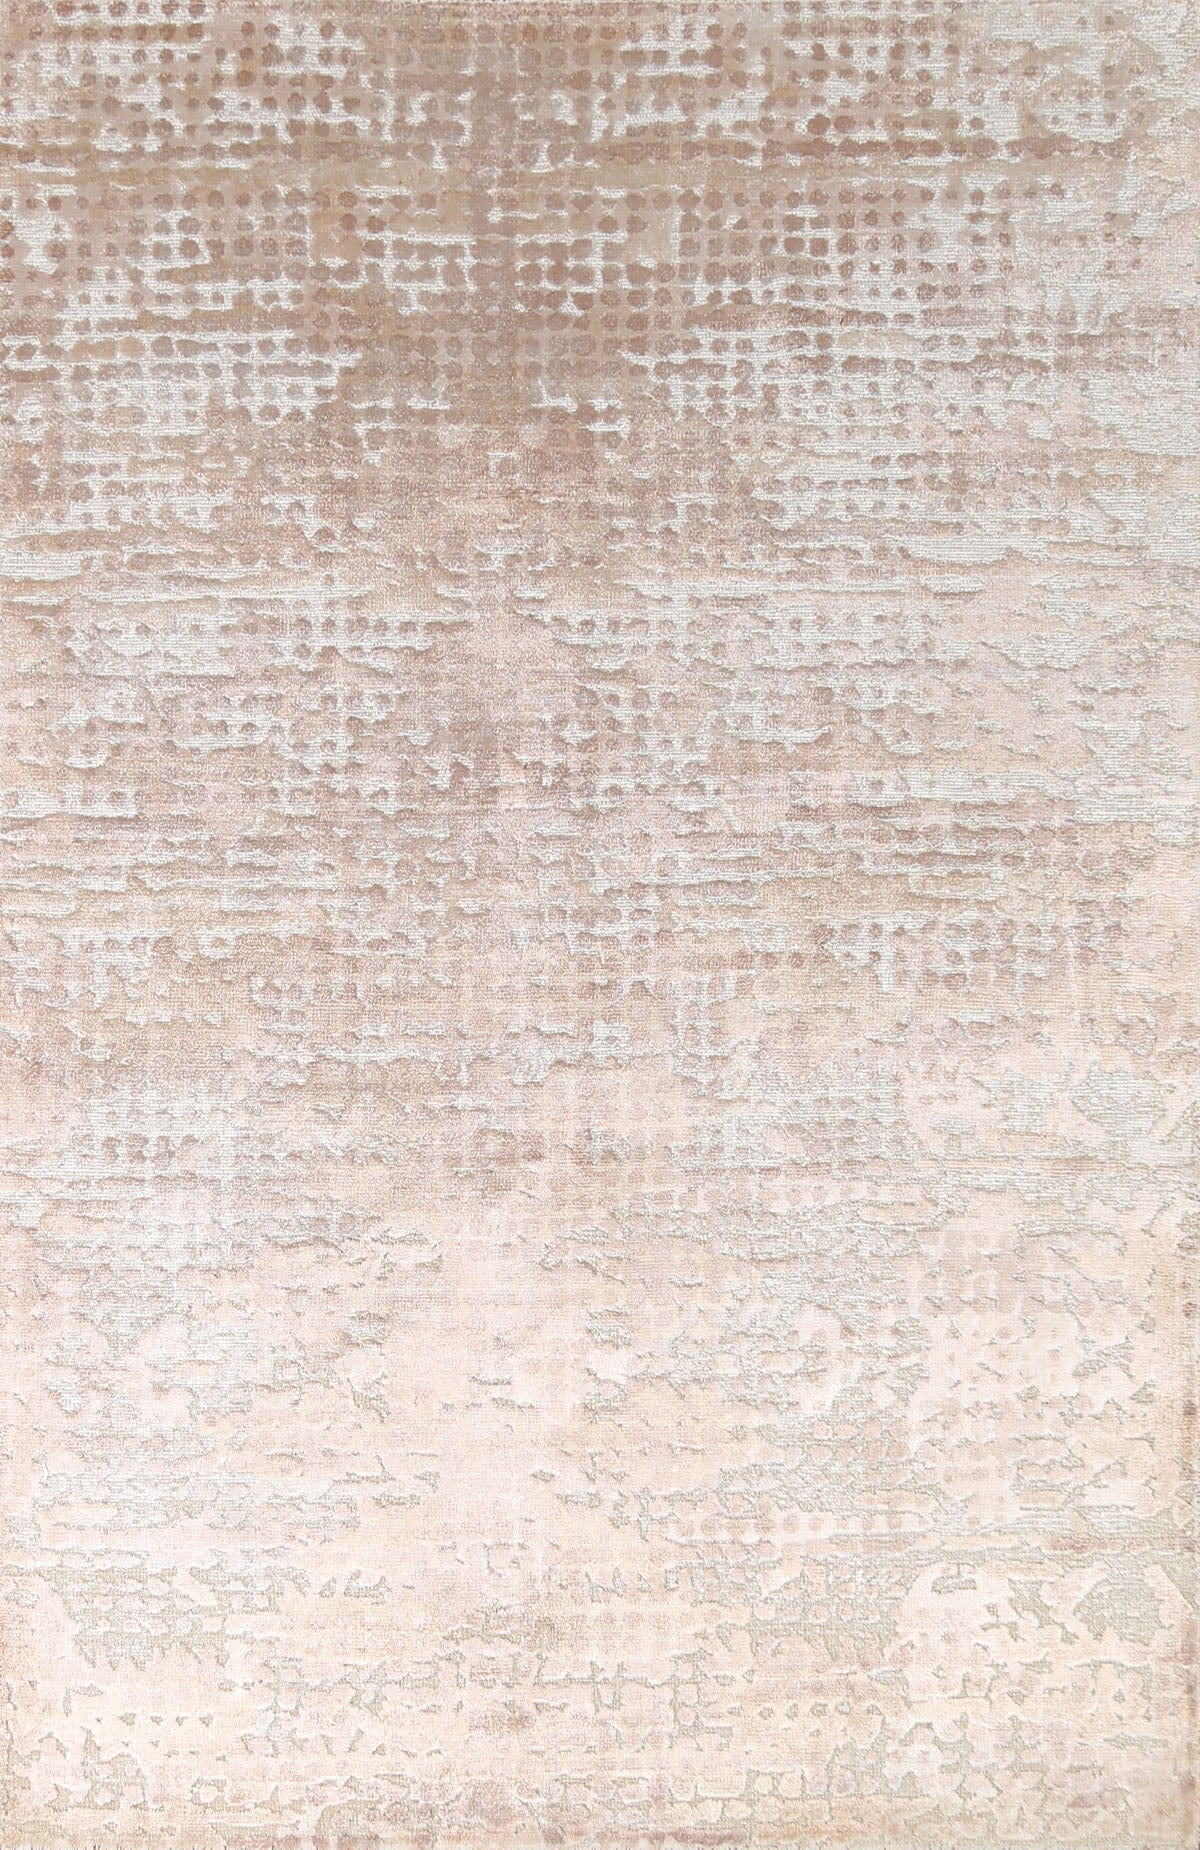 100% Silk Contemporary Abstract Area Rug 5x8